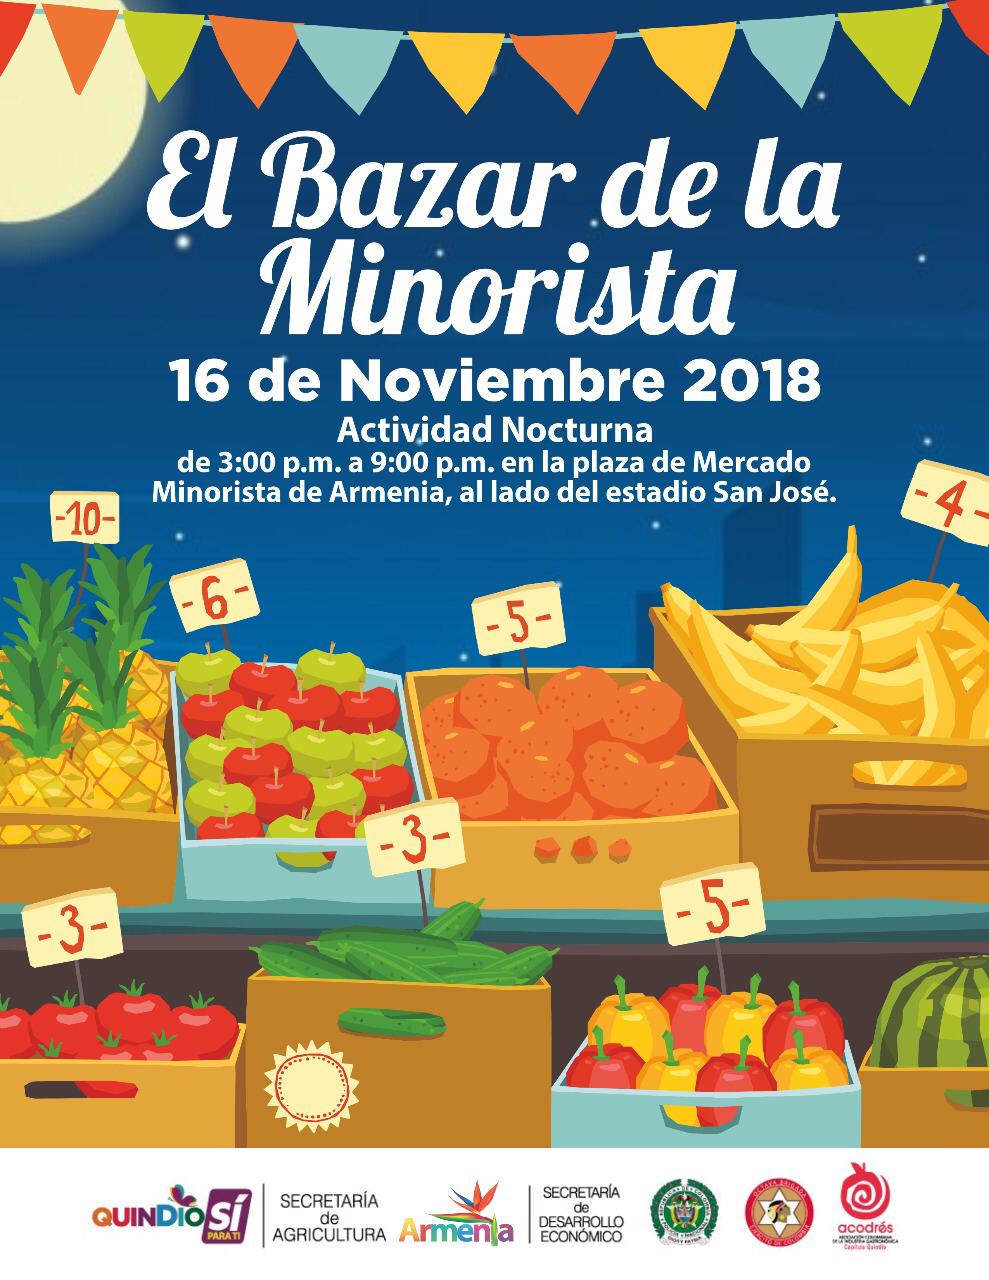 Este viernes 16 de noviembre se realiza en Armenia el Bazar de la Minorista